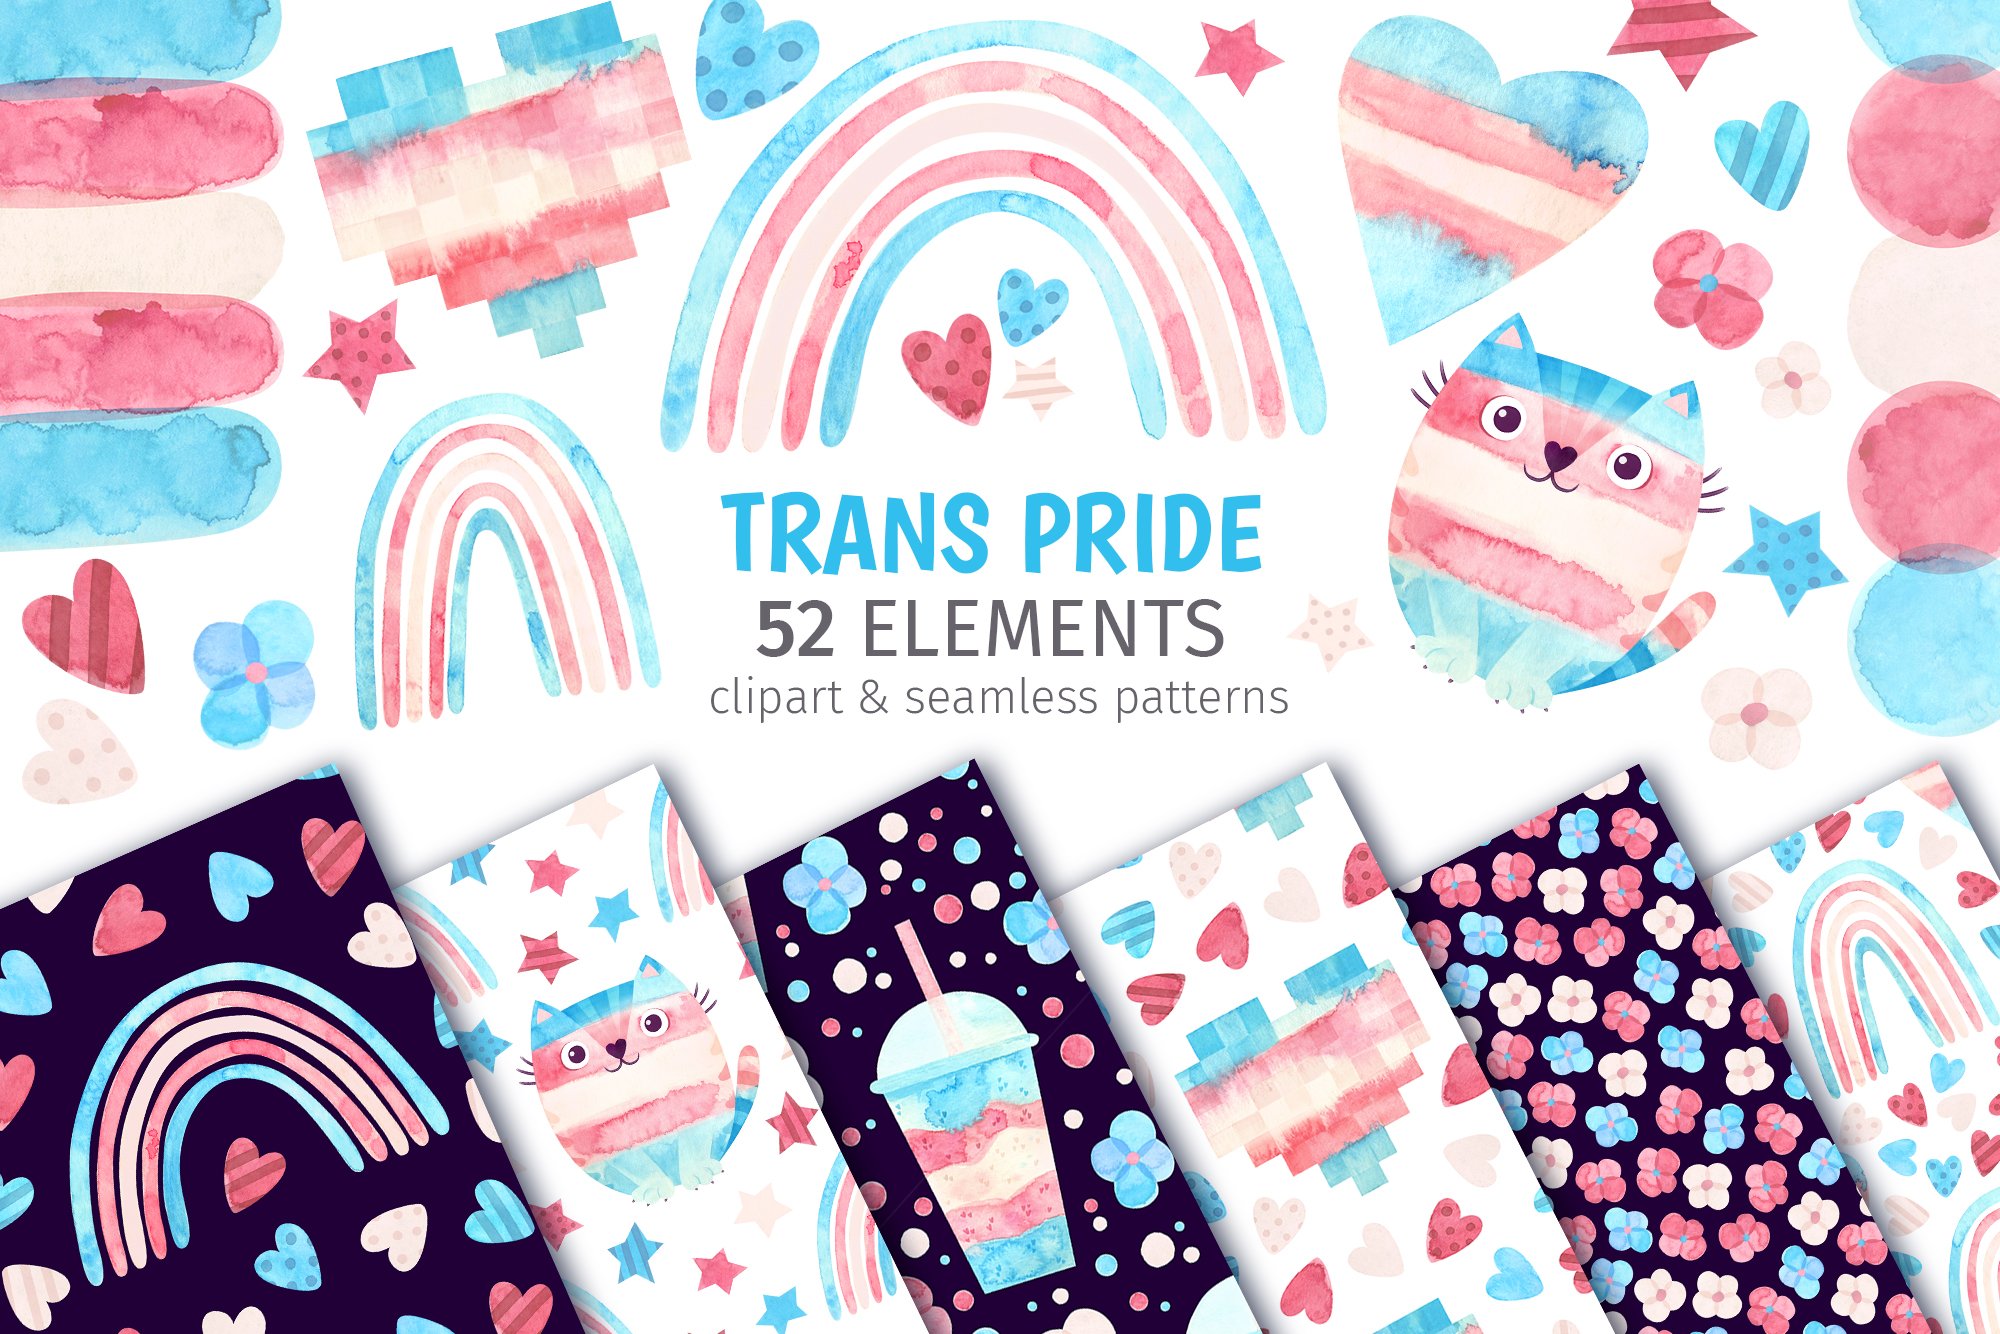 Transgender pride clipart & patterns cover image.